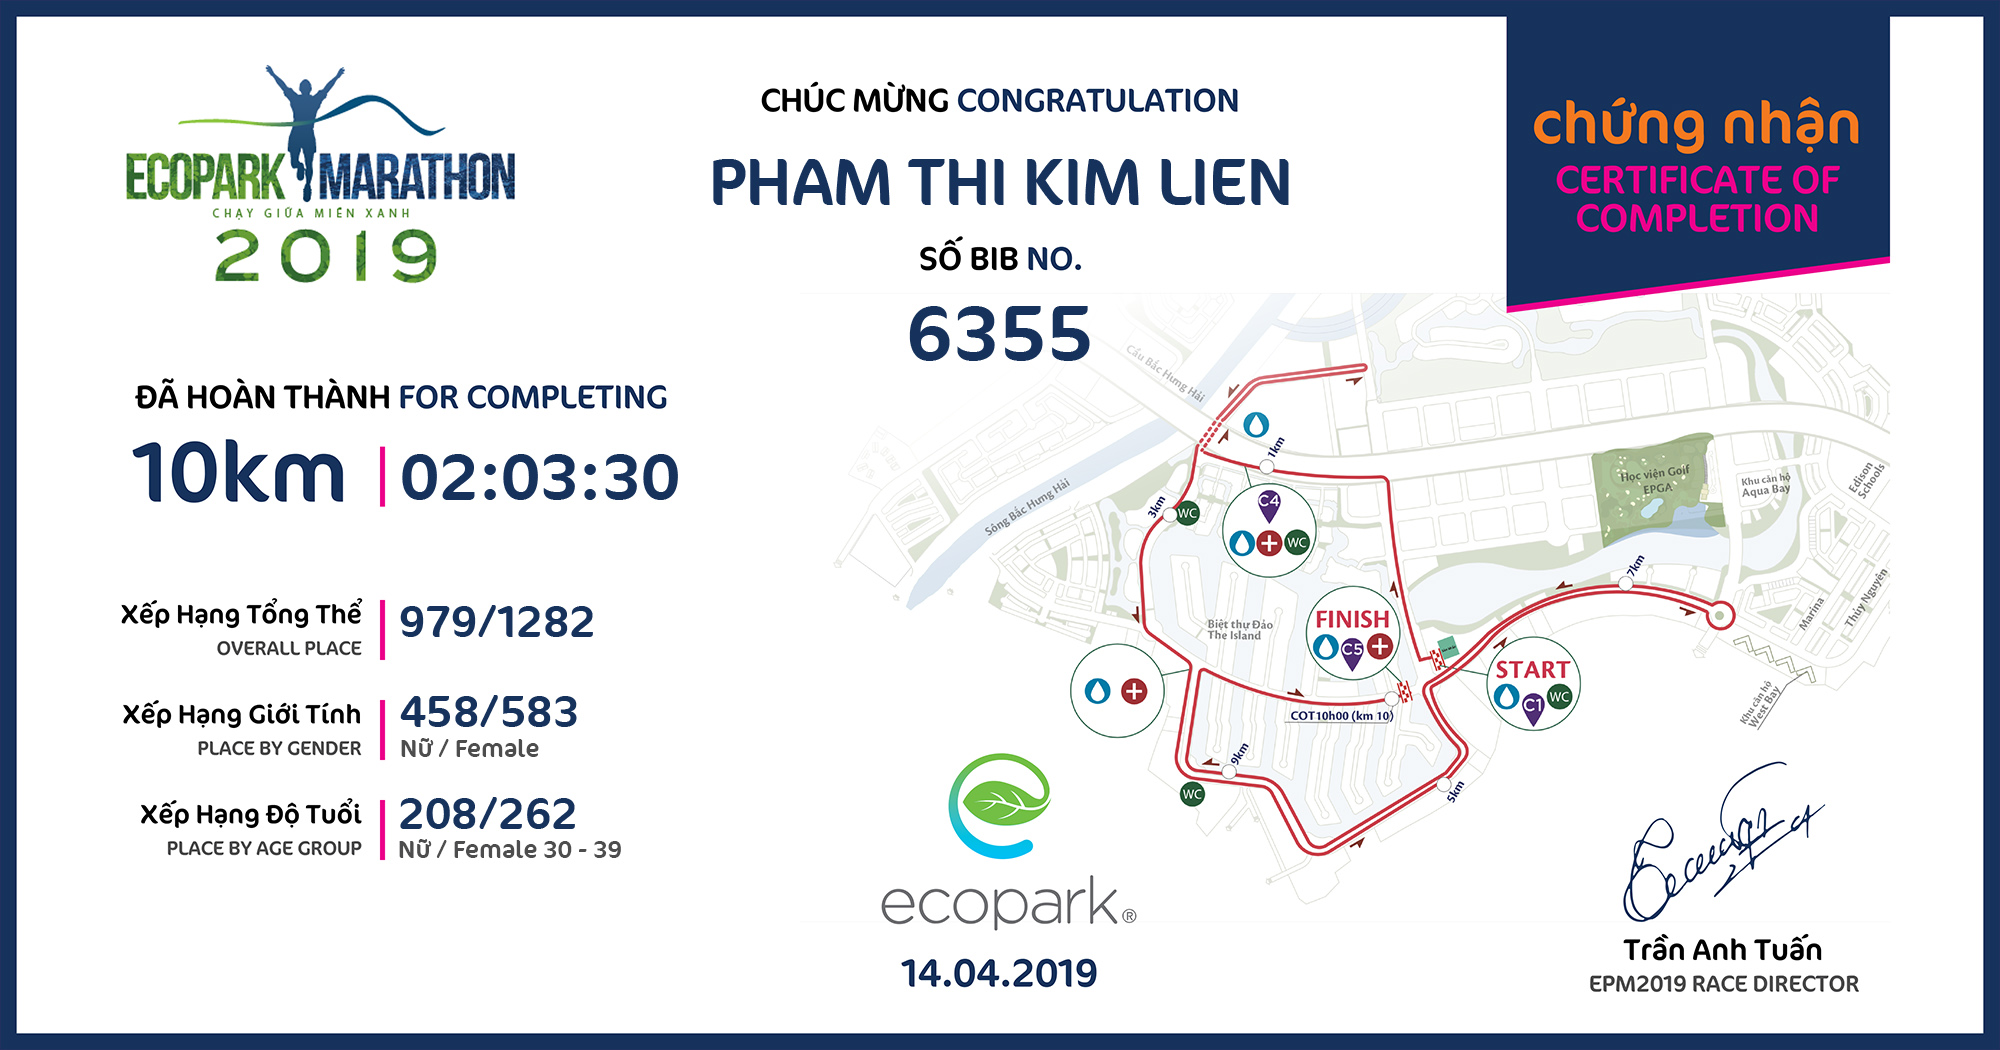 6355 - Pham Thi Kim Lien